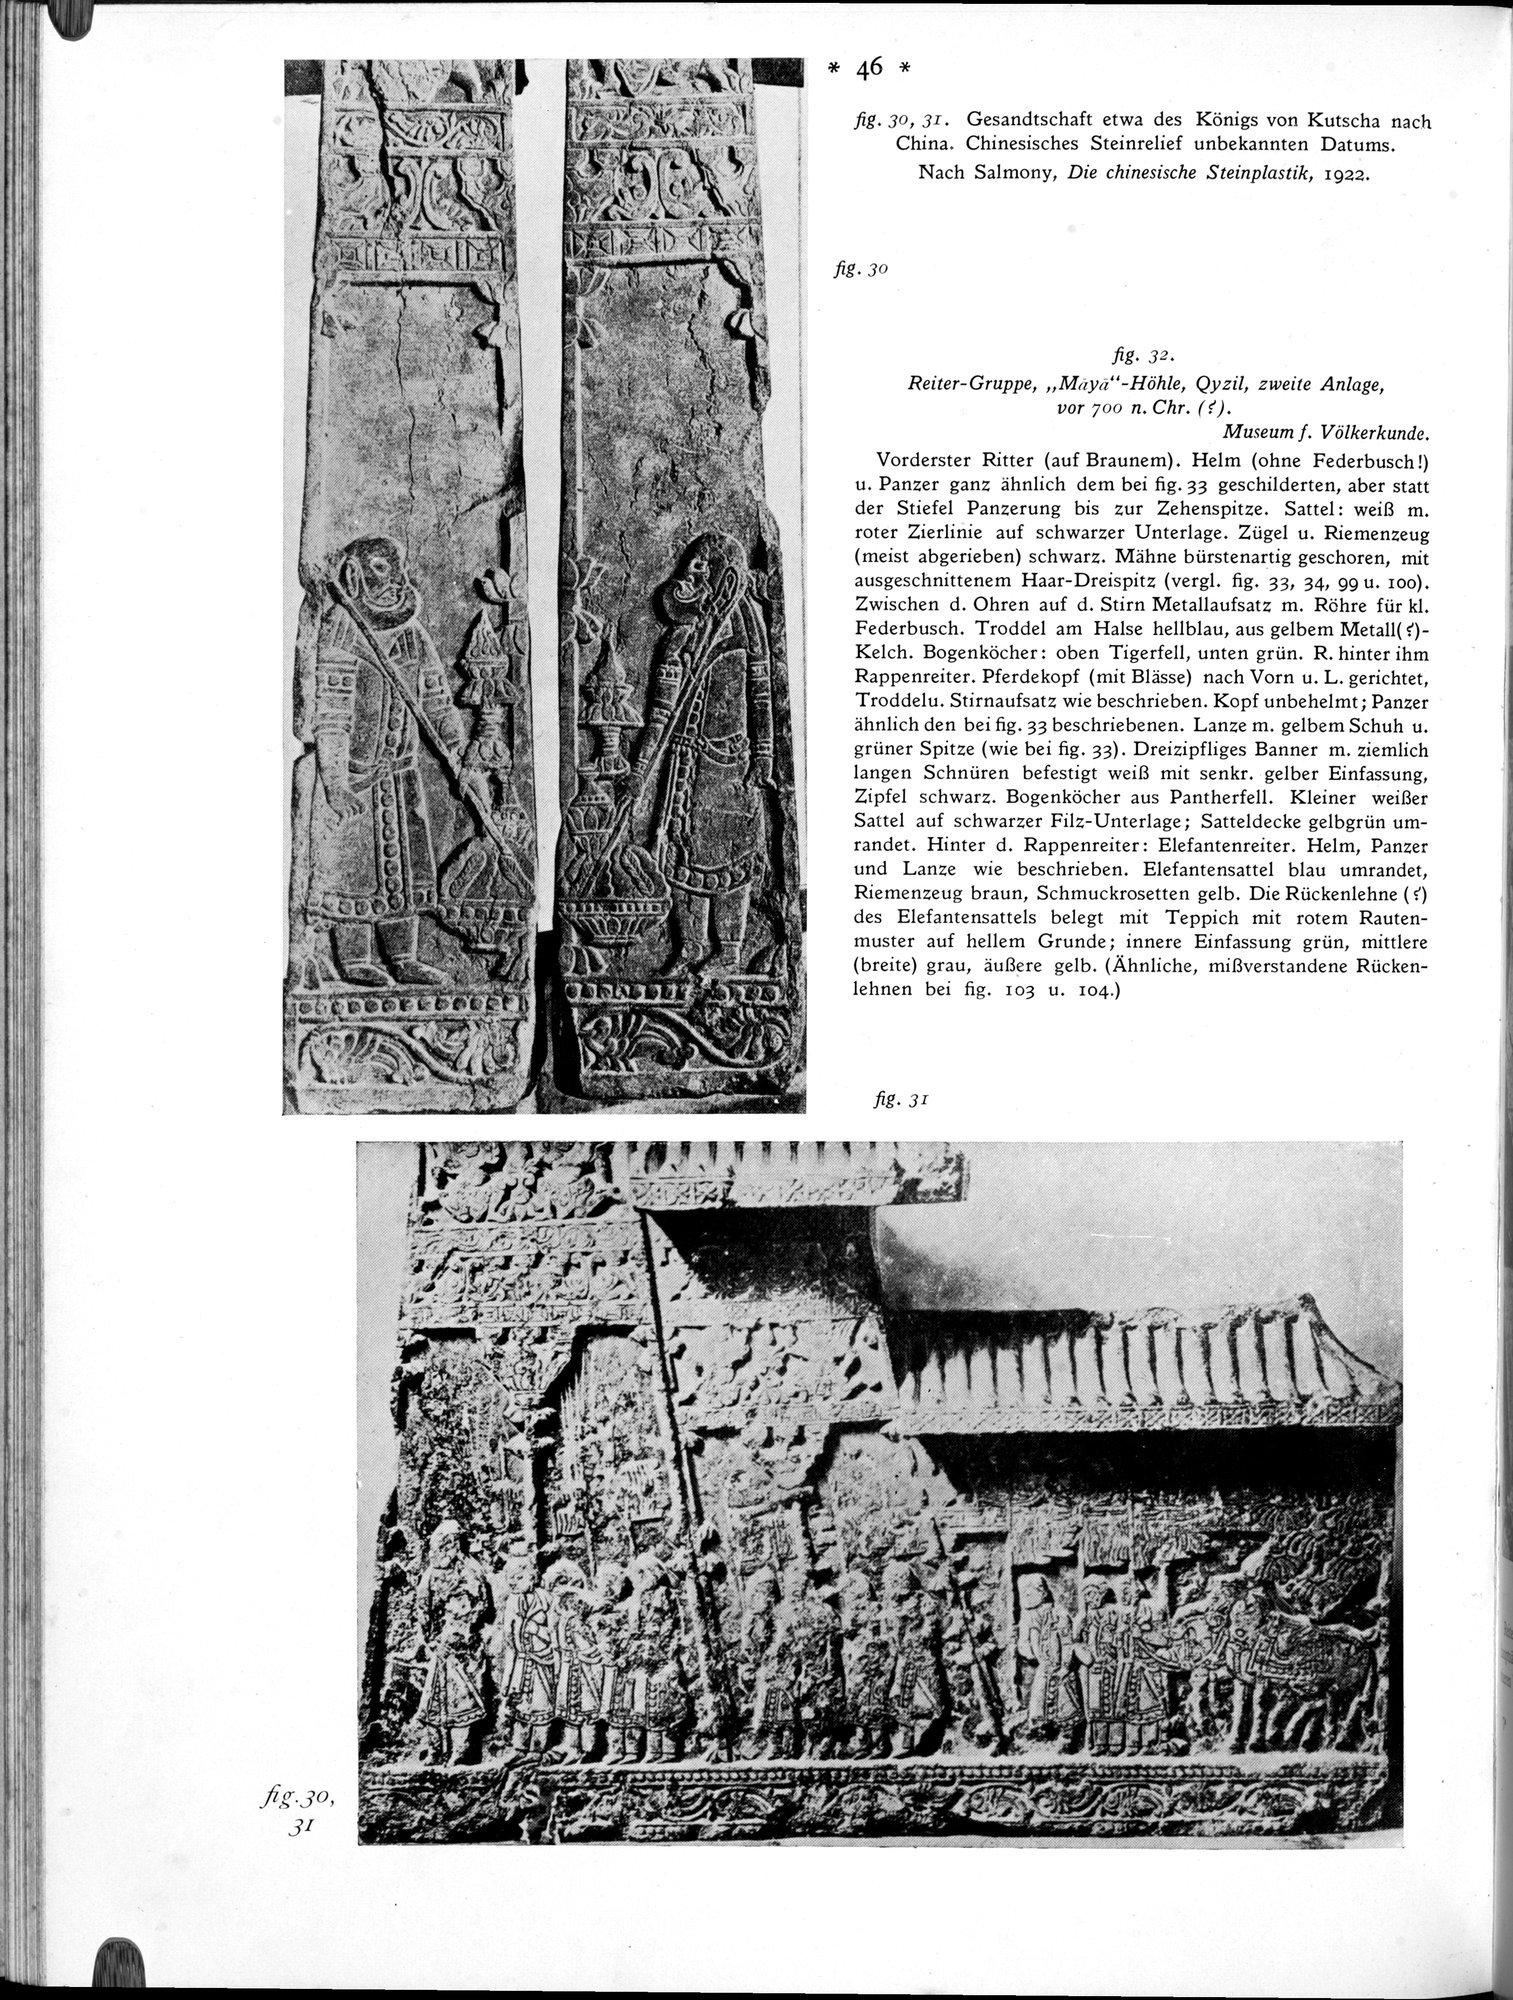 Bilderatlas zur Kunst und Kulturgeschichte Mittel-Asiens : vol.1 / Page 50 (Grayscale High Resolution Image)